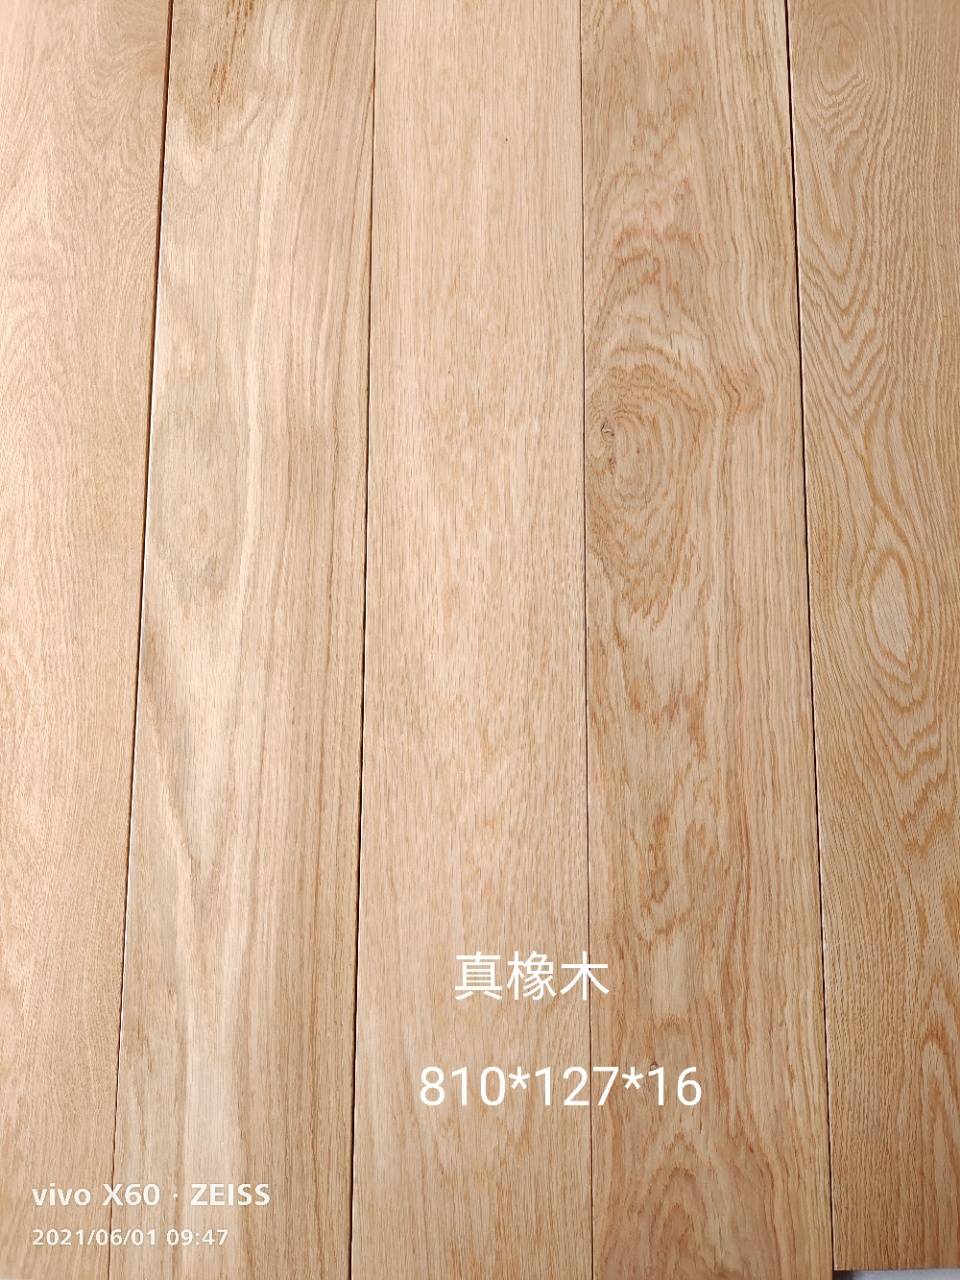 原木地板 木纹实木地板 实木地板厂家 欧式木地板 品瑞地板2